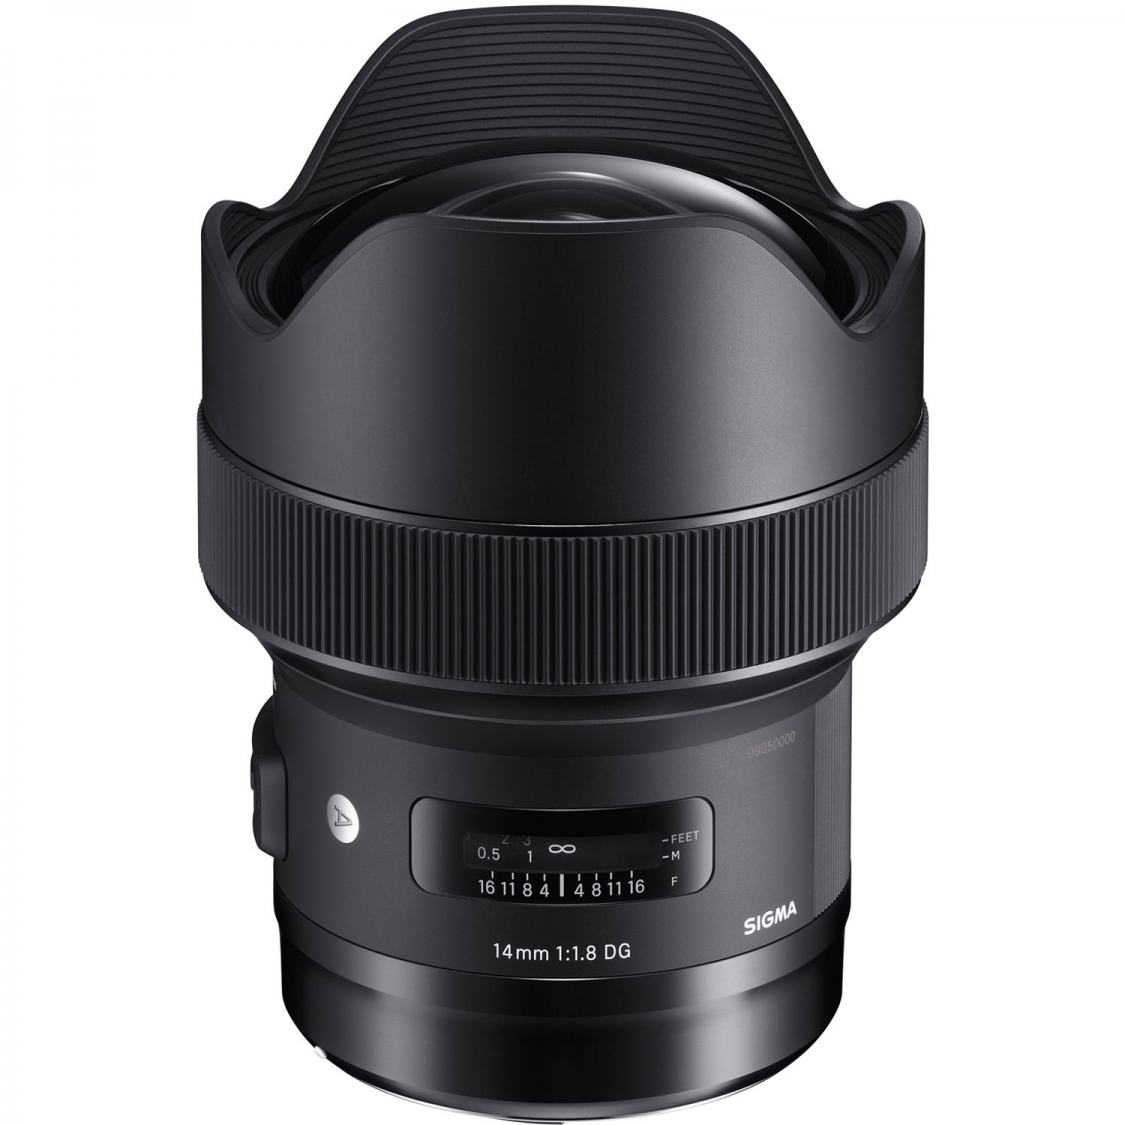 Sigma ART 14mm F1.8 DG HSM Lens for Nikon AF Mount